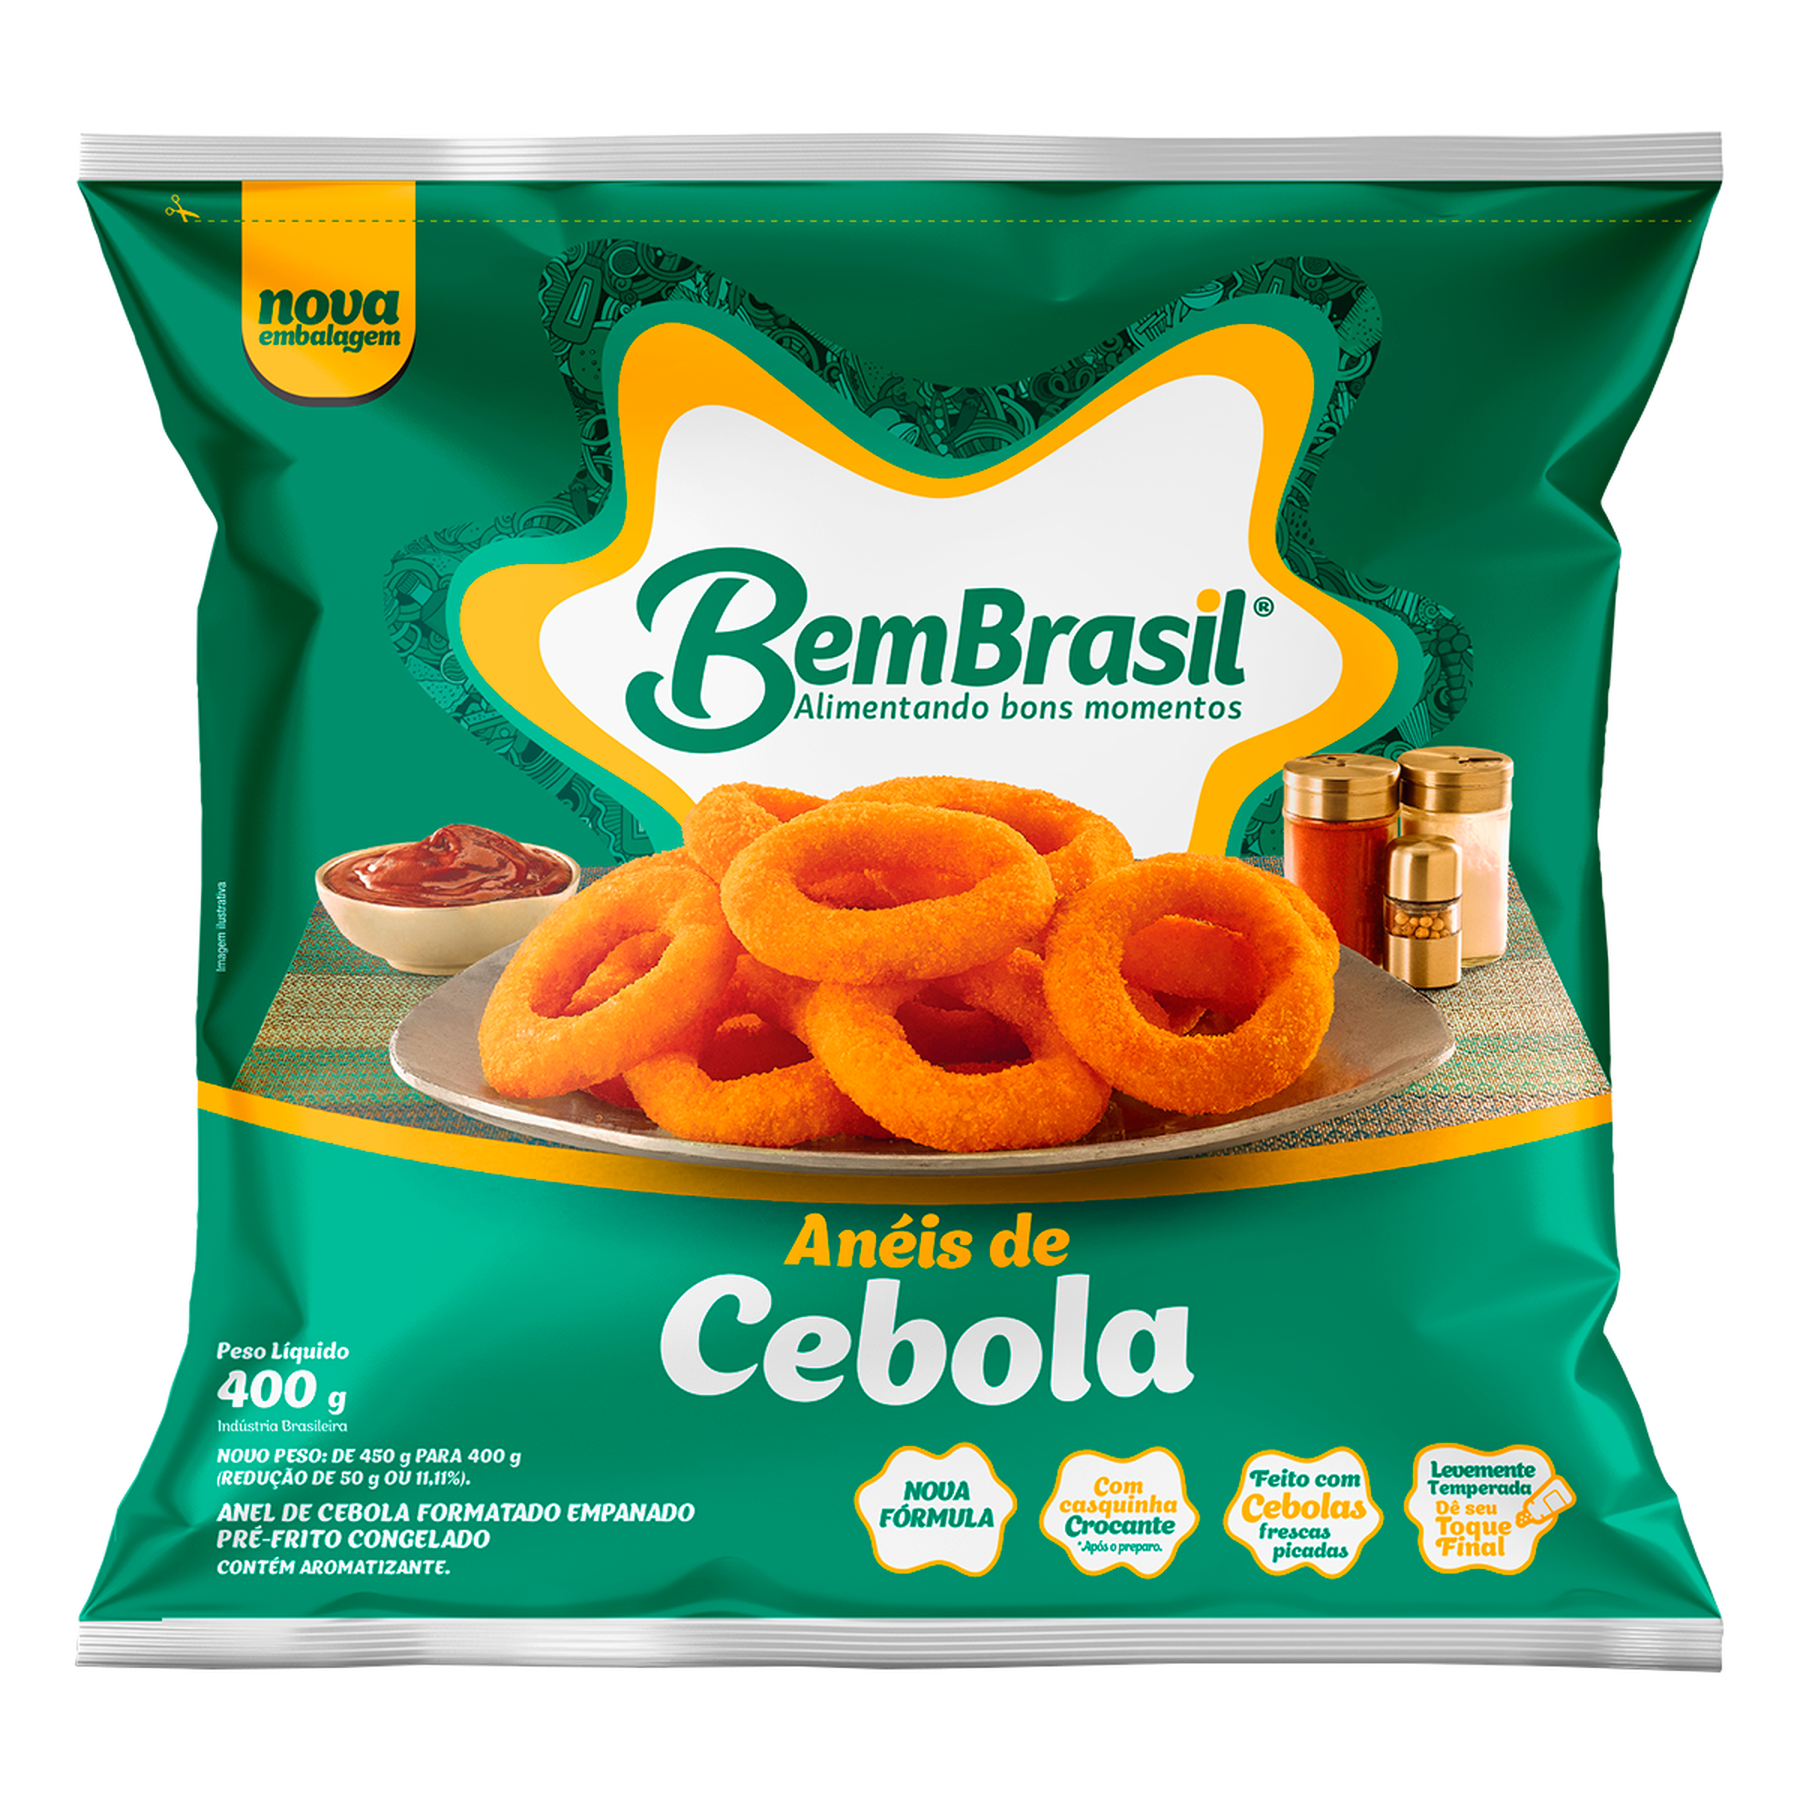 Anéis de Cebola Empanados Bem Brasil Pacote 400g